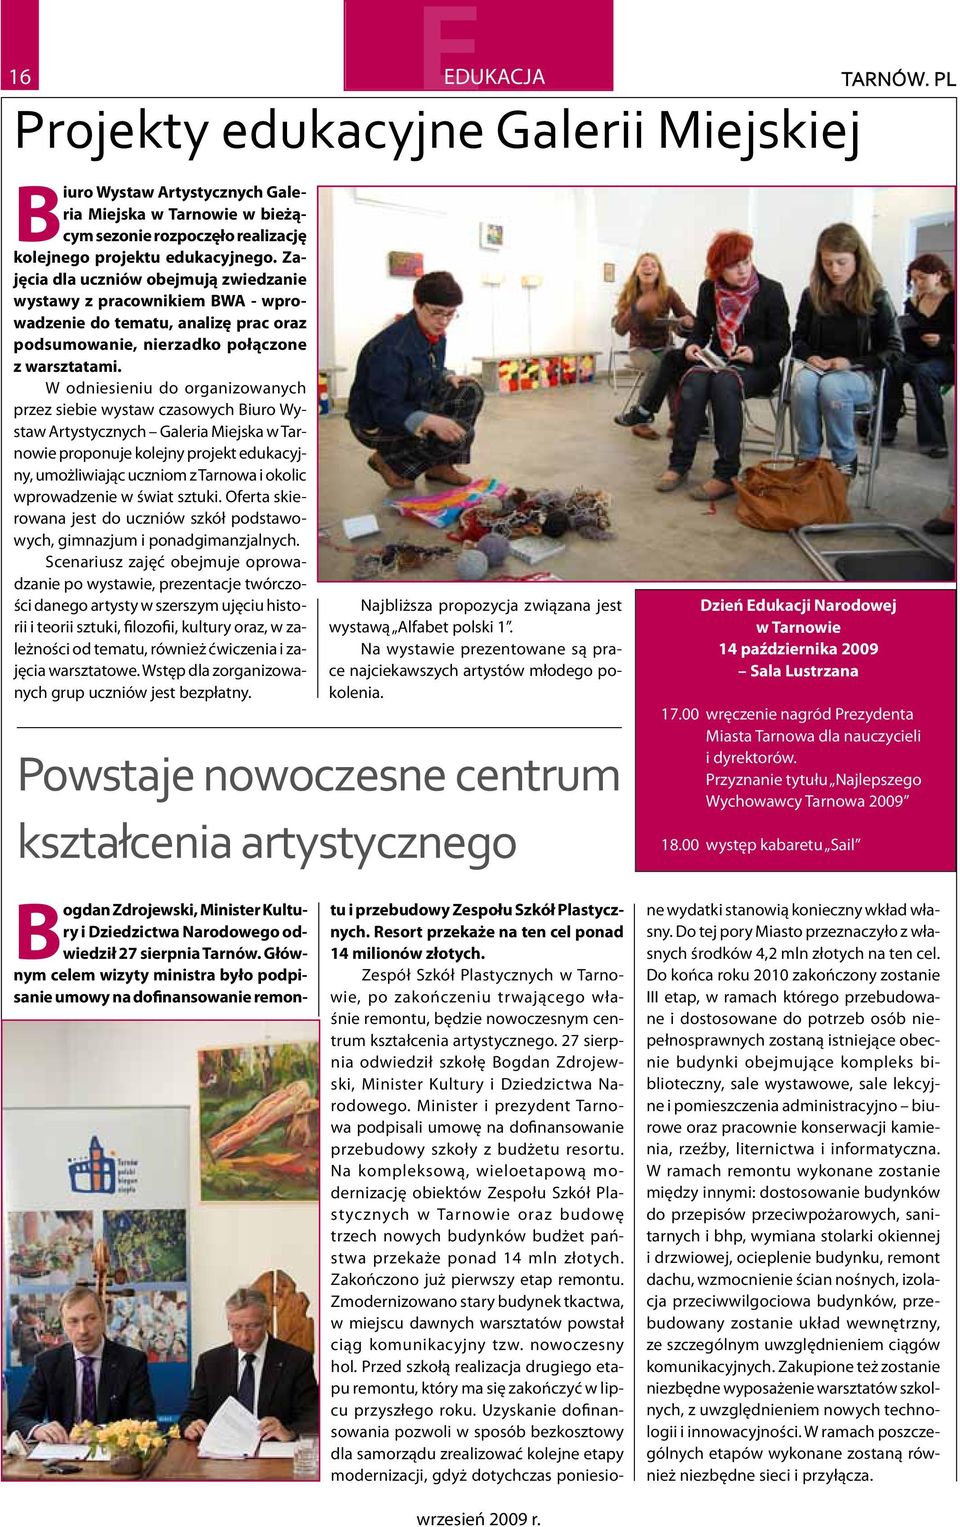 W odniesieniu do organizowanych przez siebie wystaw czasowych Biuro Wystaw Artystycznych Galeria Miejska w Tarnowie proponuje kolejny projekt edukacyjny, umożliwiając uczniom z Tarnowa i okolic